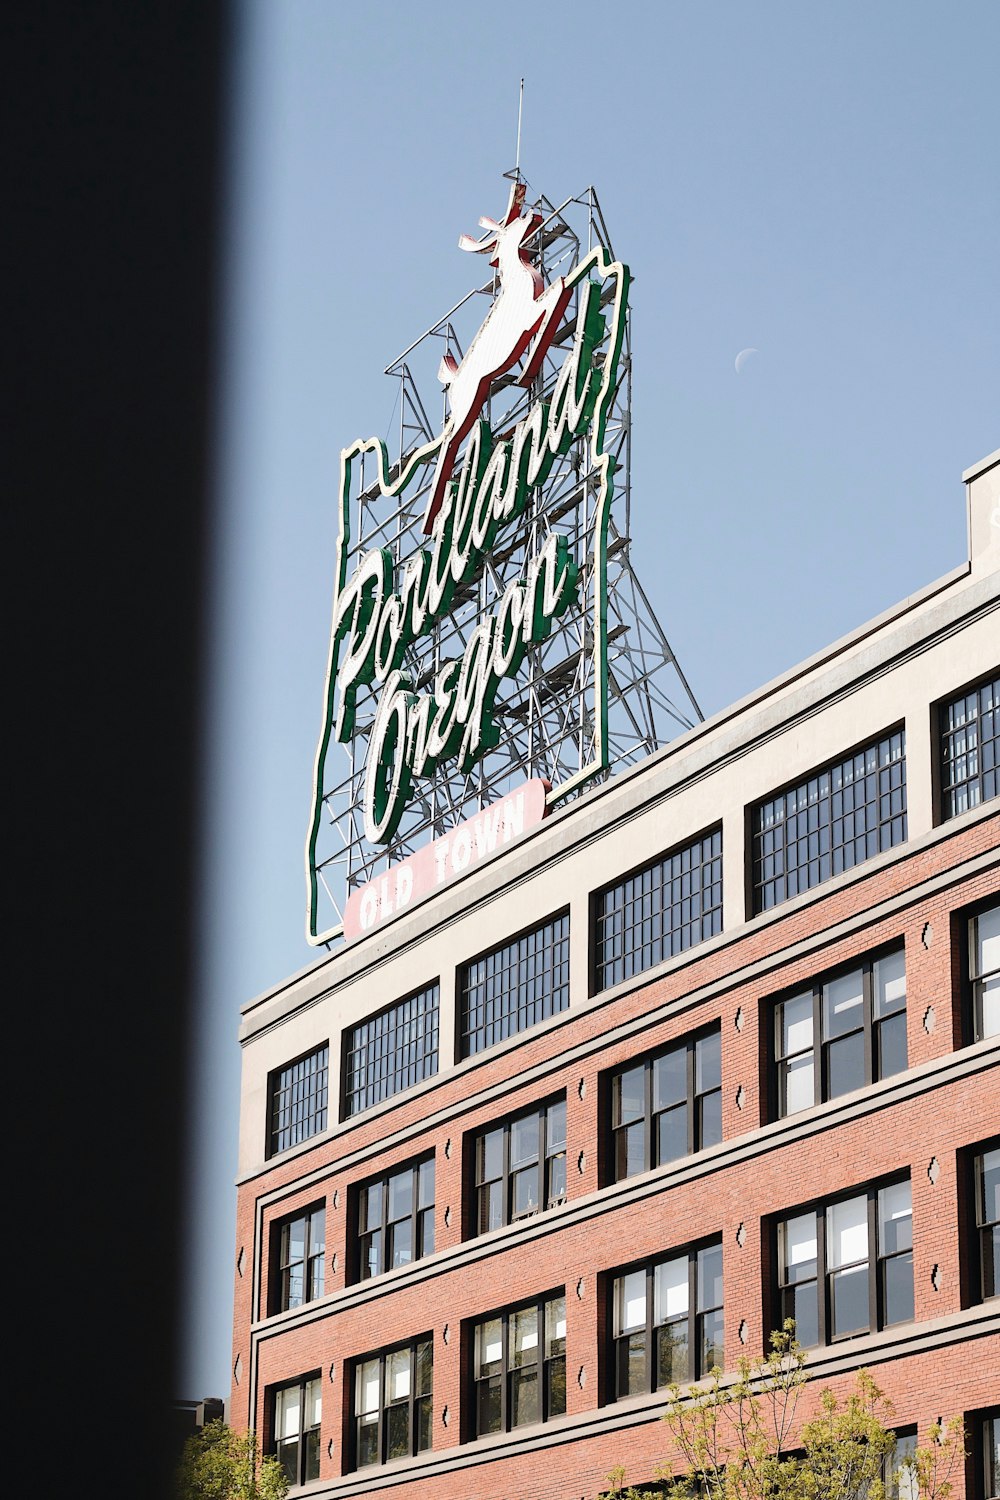 Portland Oregon metal banner on building